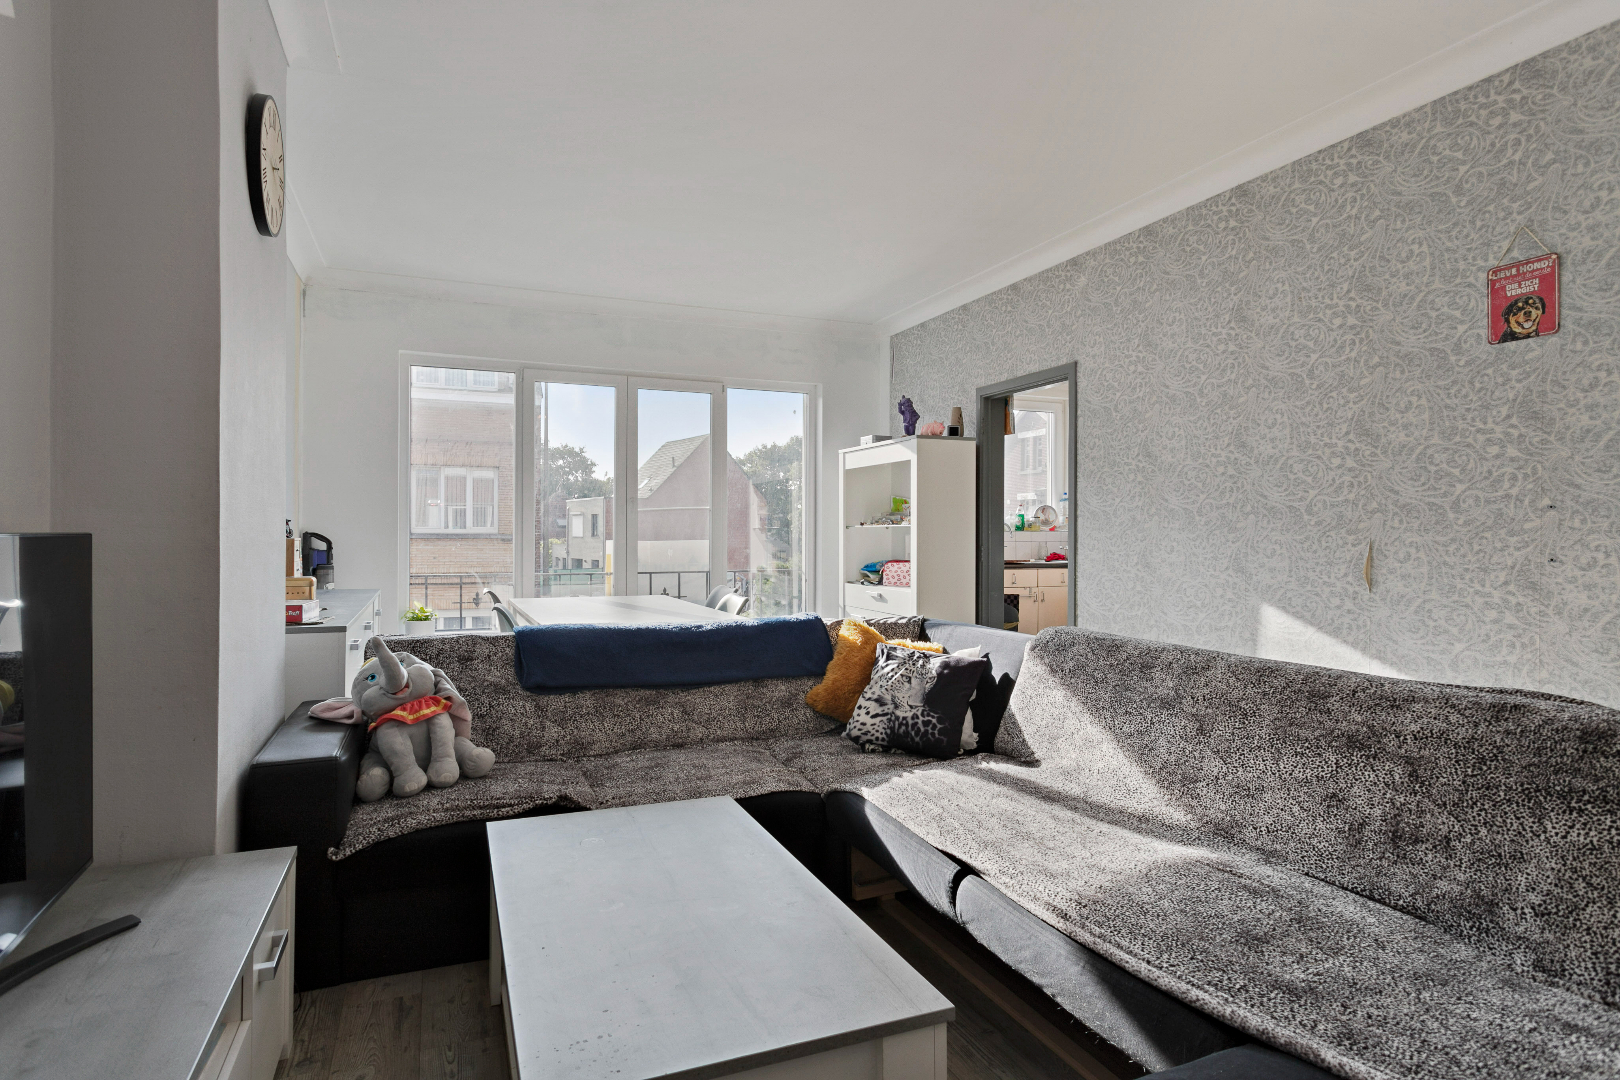 Appartement met twee slaapkamers te Mechelen 